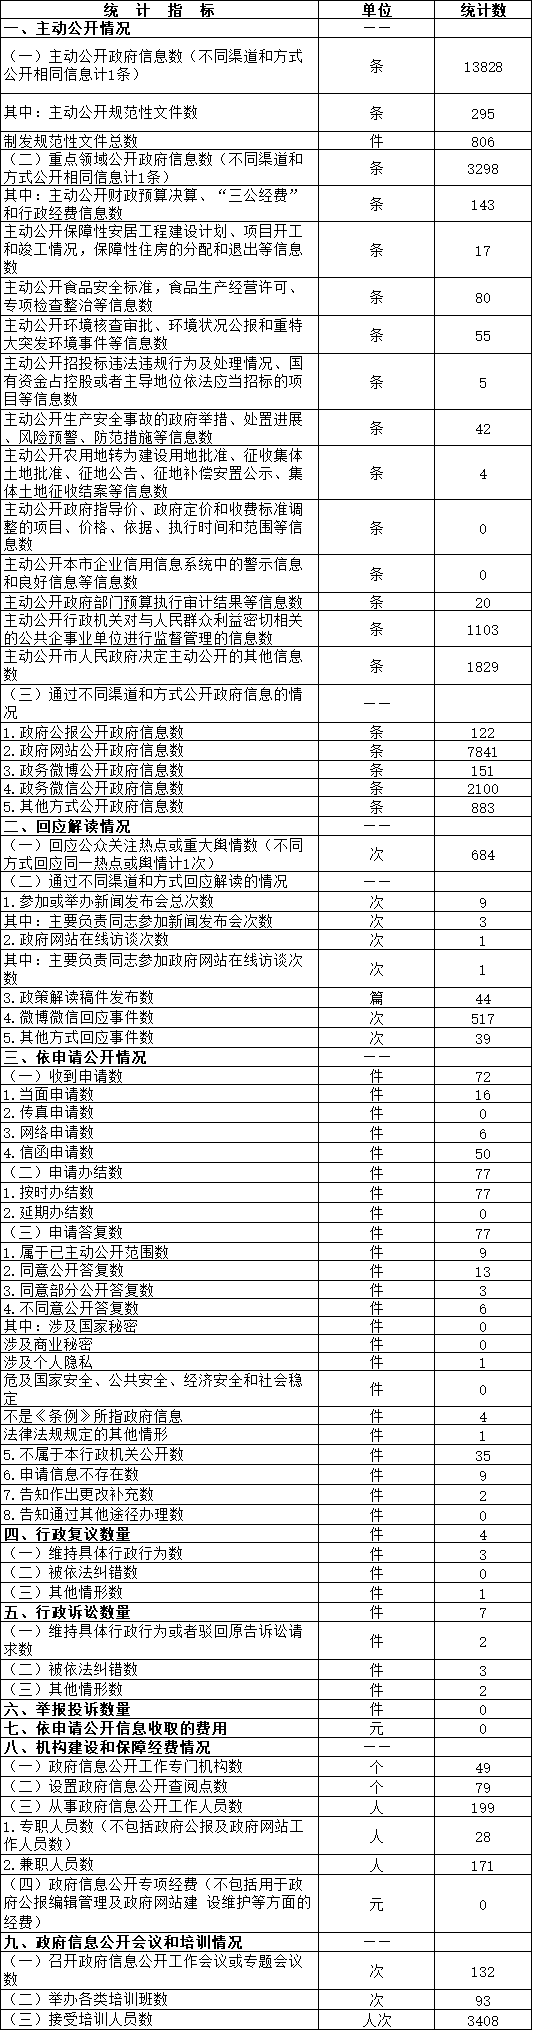 北京市延慶區政府信息公開情況統計表（2016年度）